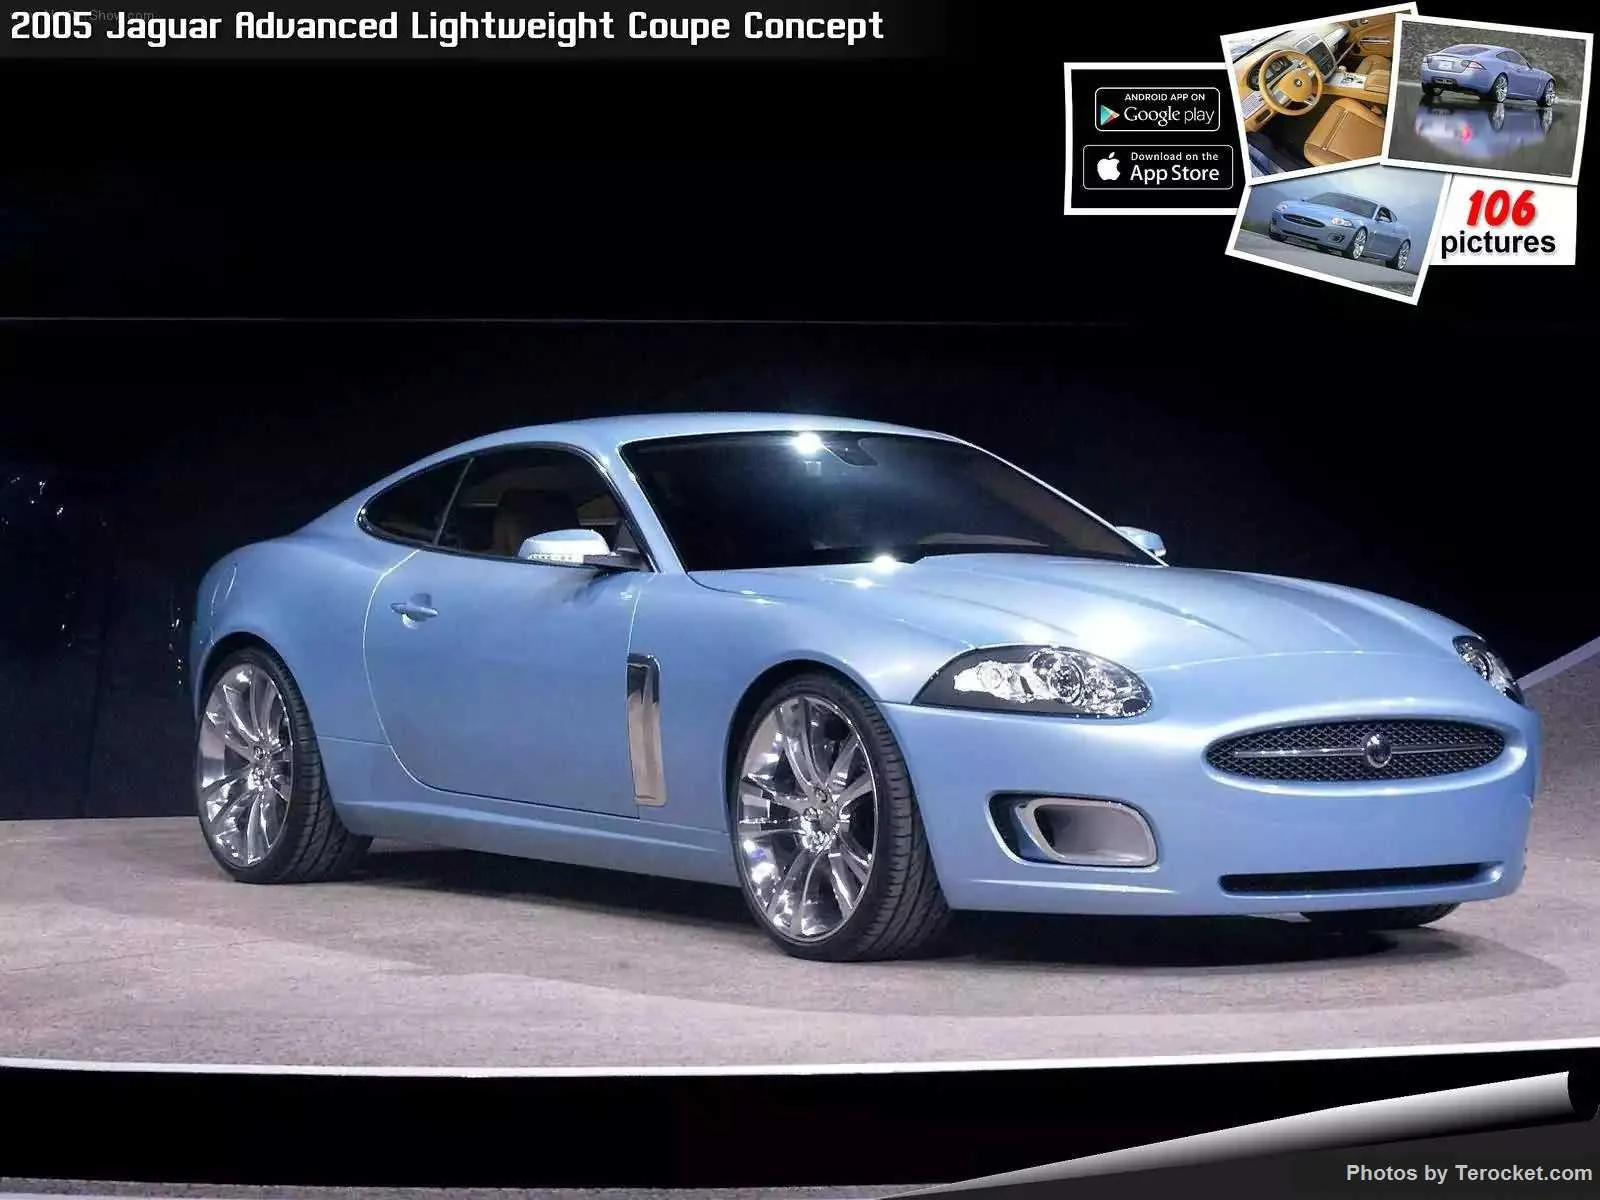 Hình ảnh xe ô tô Jaguar Advanced Lightweight Coupe Concept 2005 & nội ngoại thất